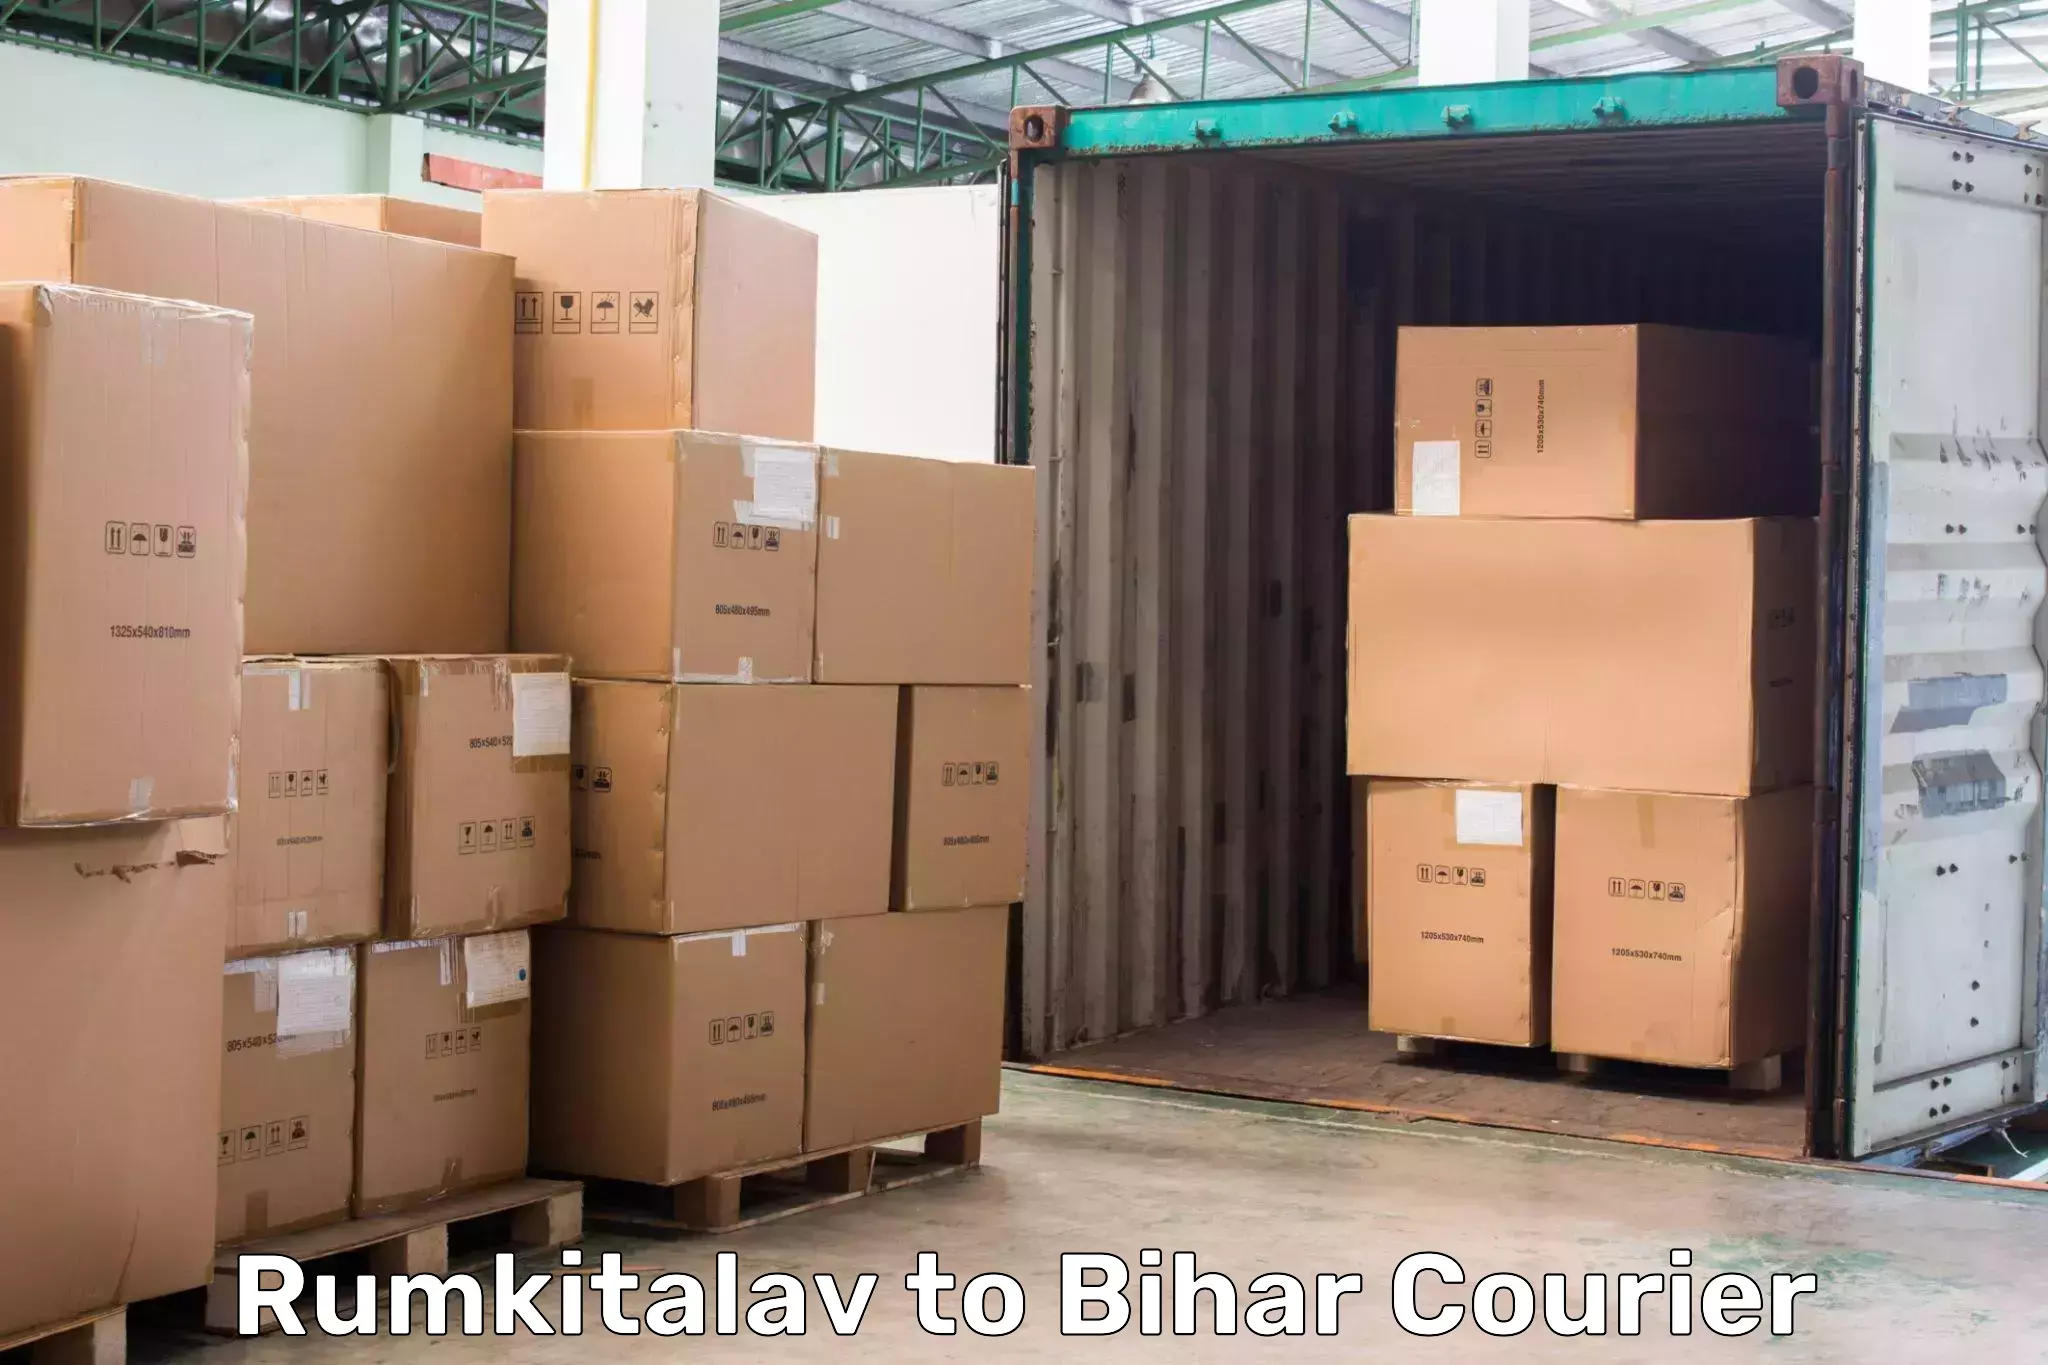 On-call courier service in Rumkitalav to Bikramganj